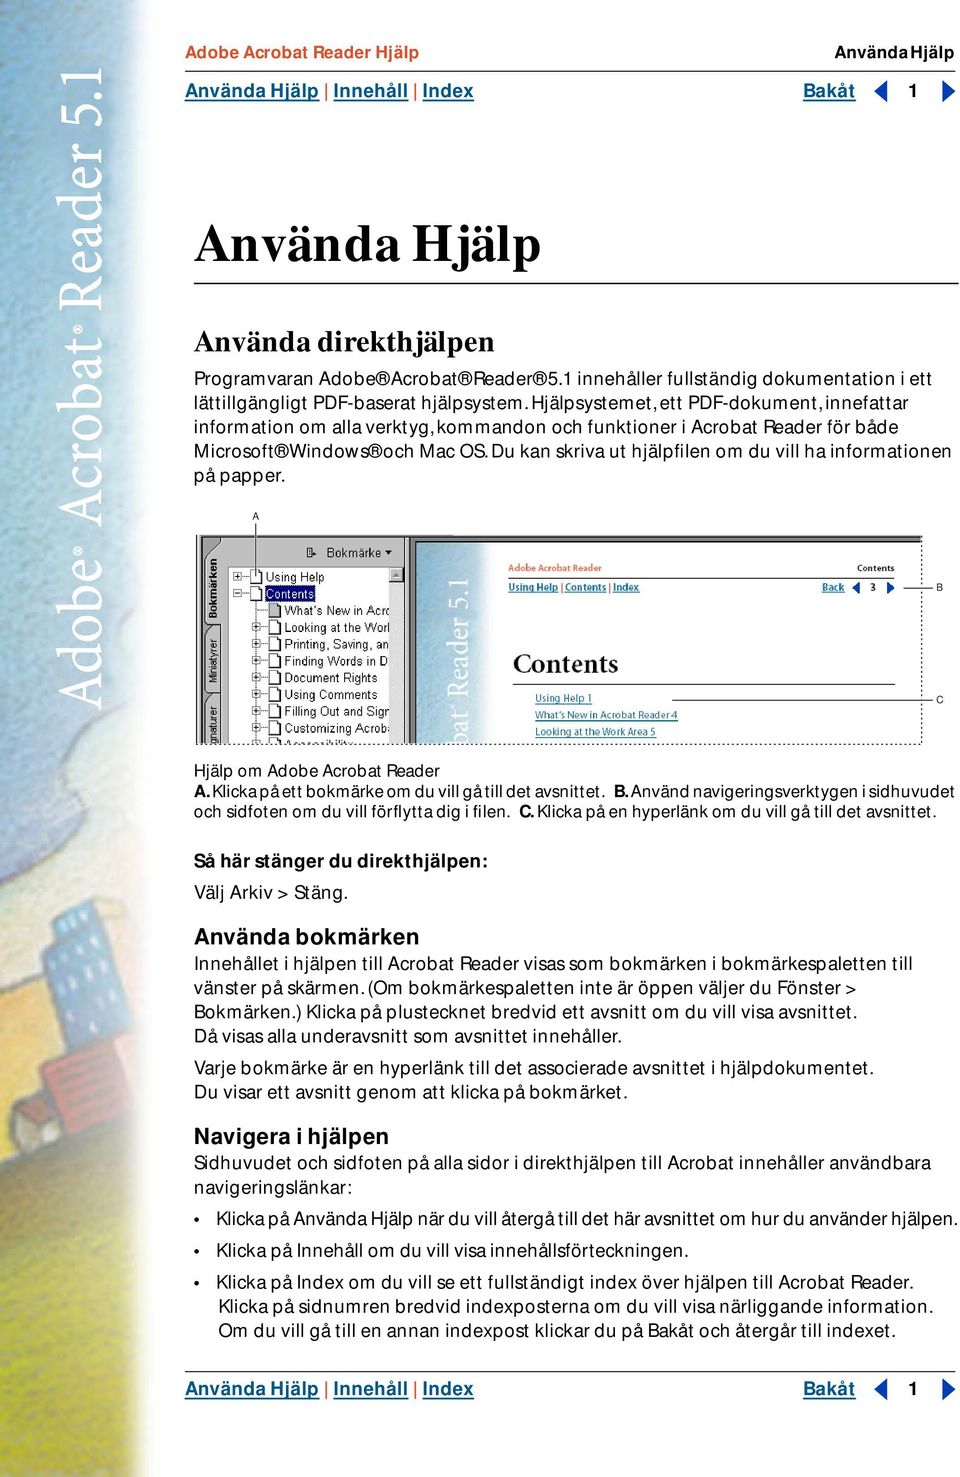 Hjälpsystemet, ett PDF-dokument, innefattar information om alla verktyg, kommandon och funktioner i Acrobat Reader för både Microsoft Windows och Mac OS.